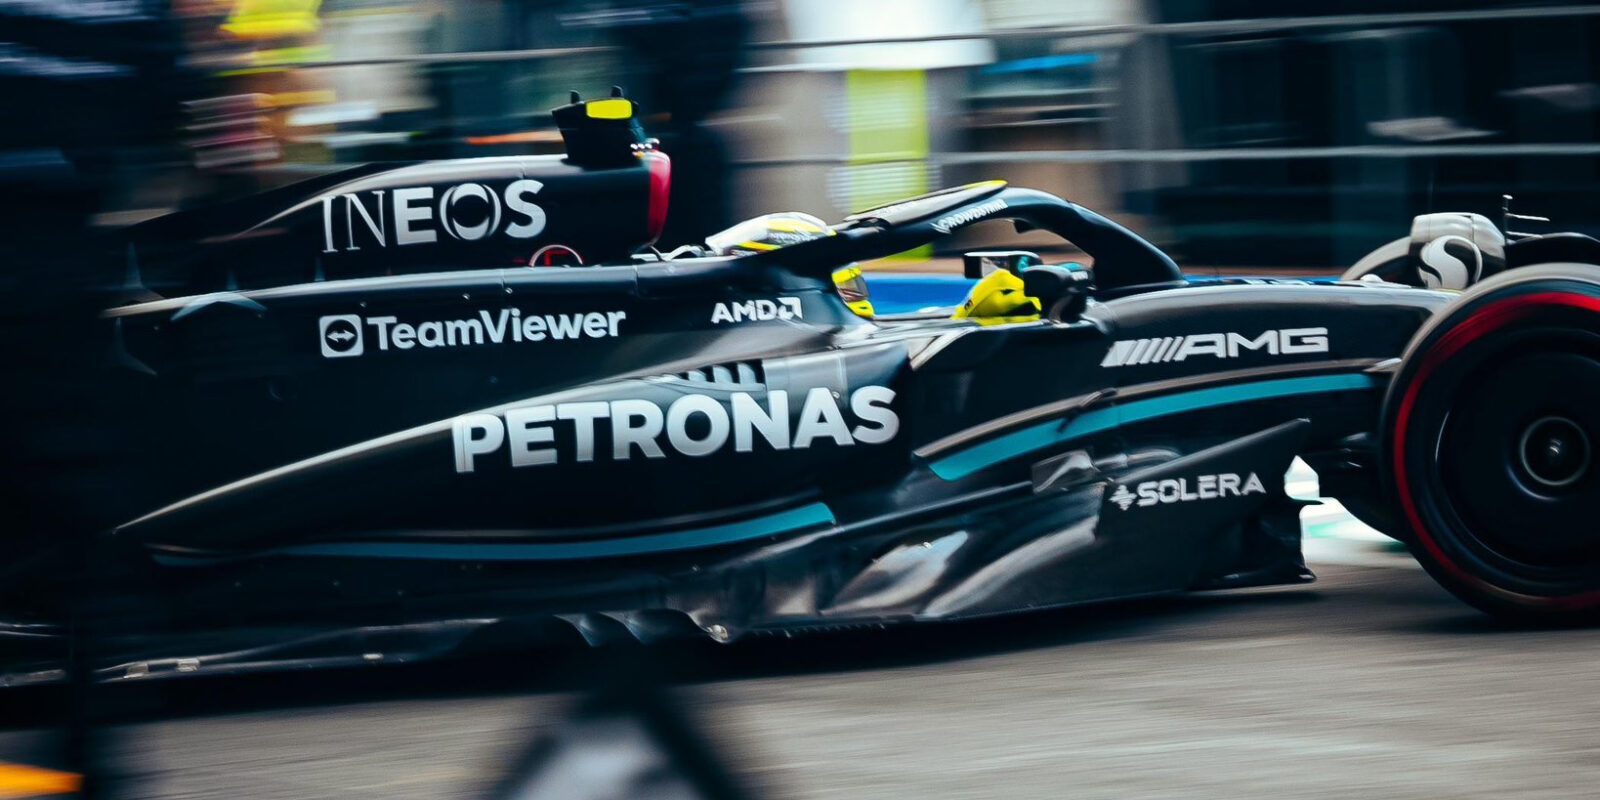 Hamilton znepokojen znovuobjeveným problémem Mercedesu